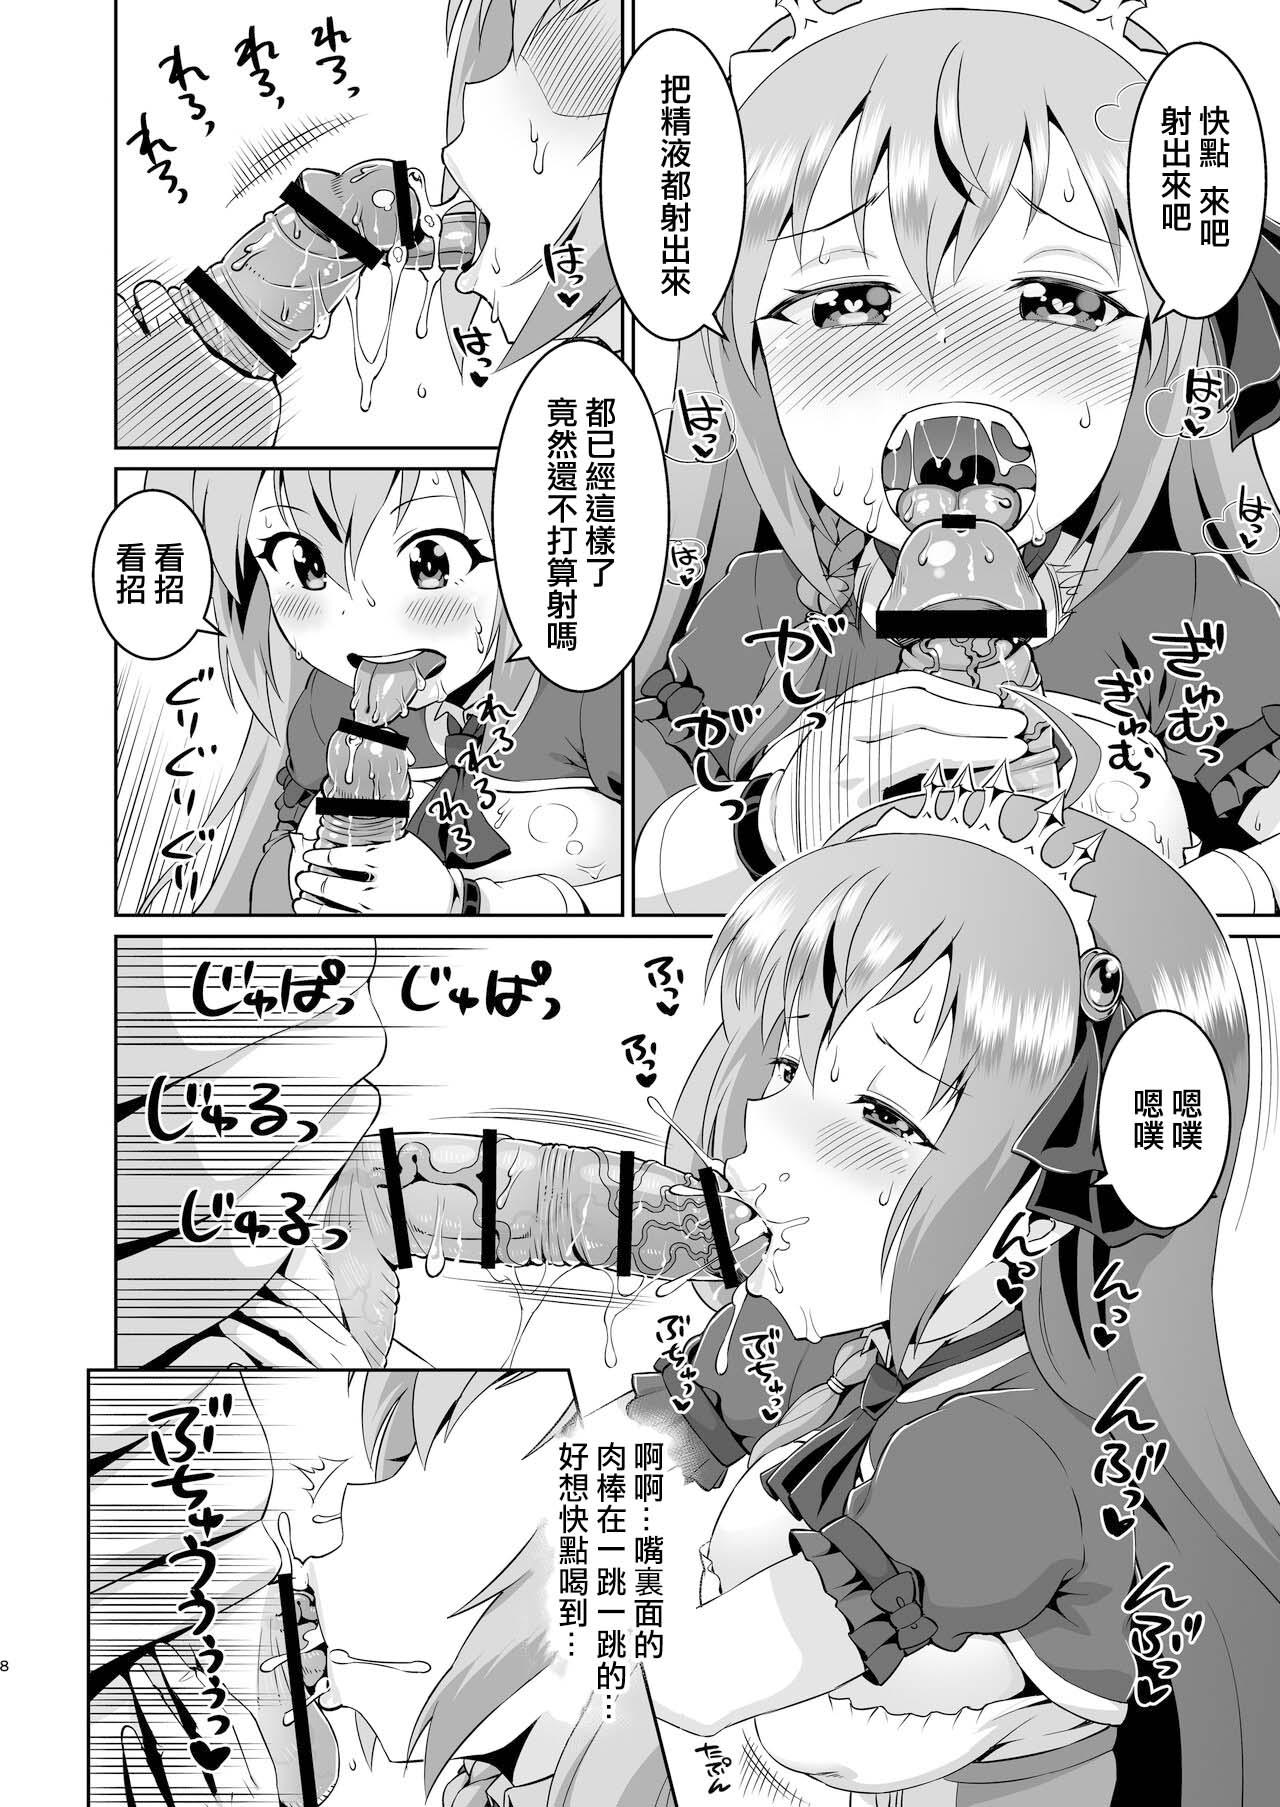 Big Peco-chan Meccha Kawaii yo ne - Princess connect Stretch - Page 7